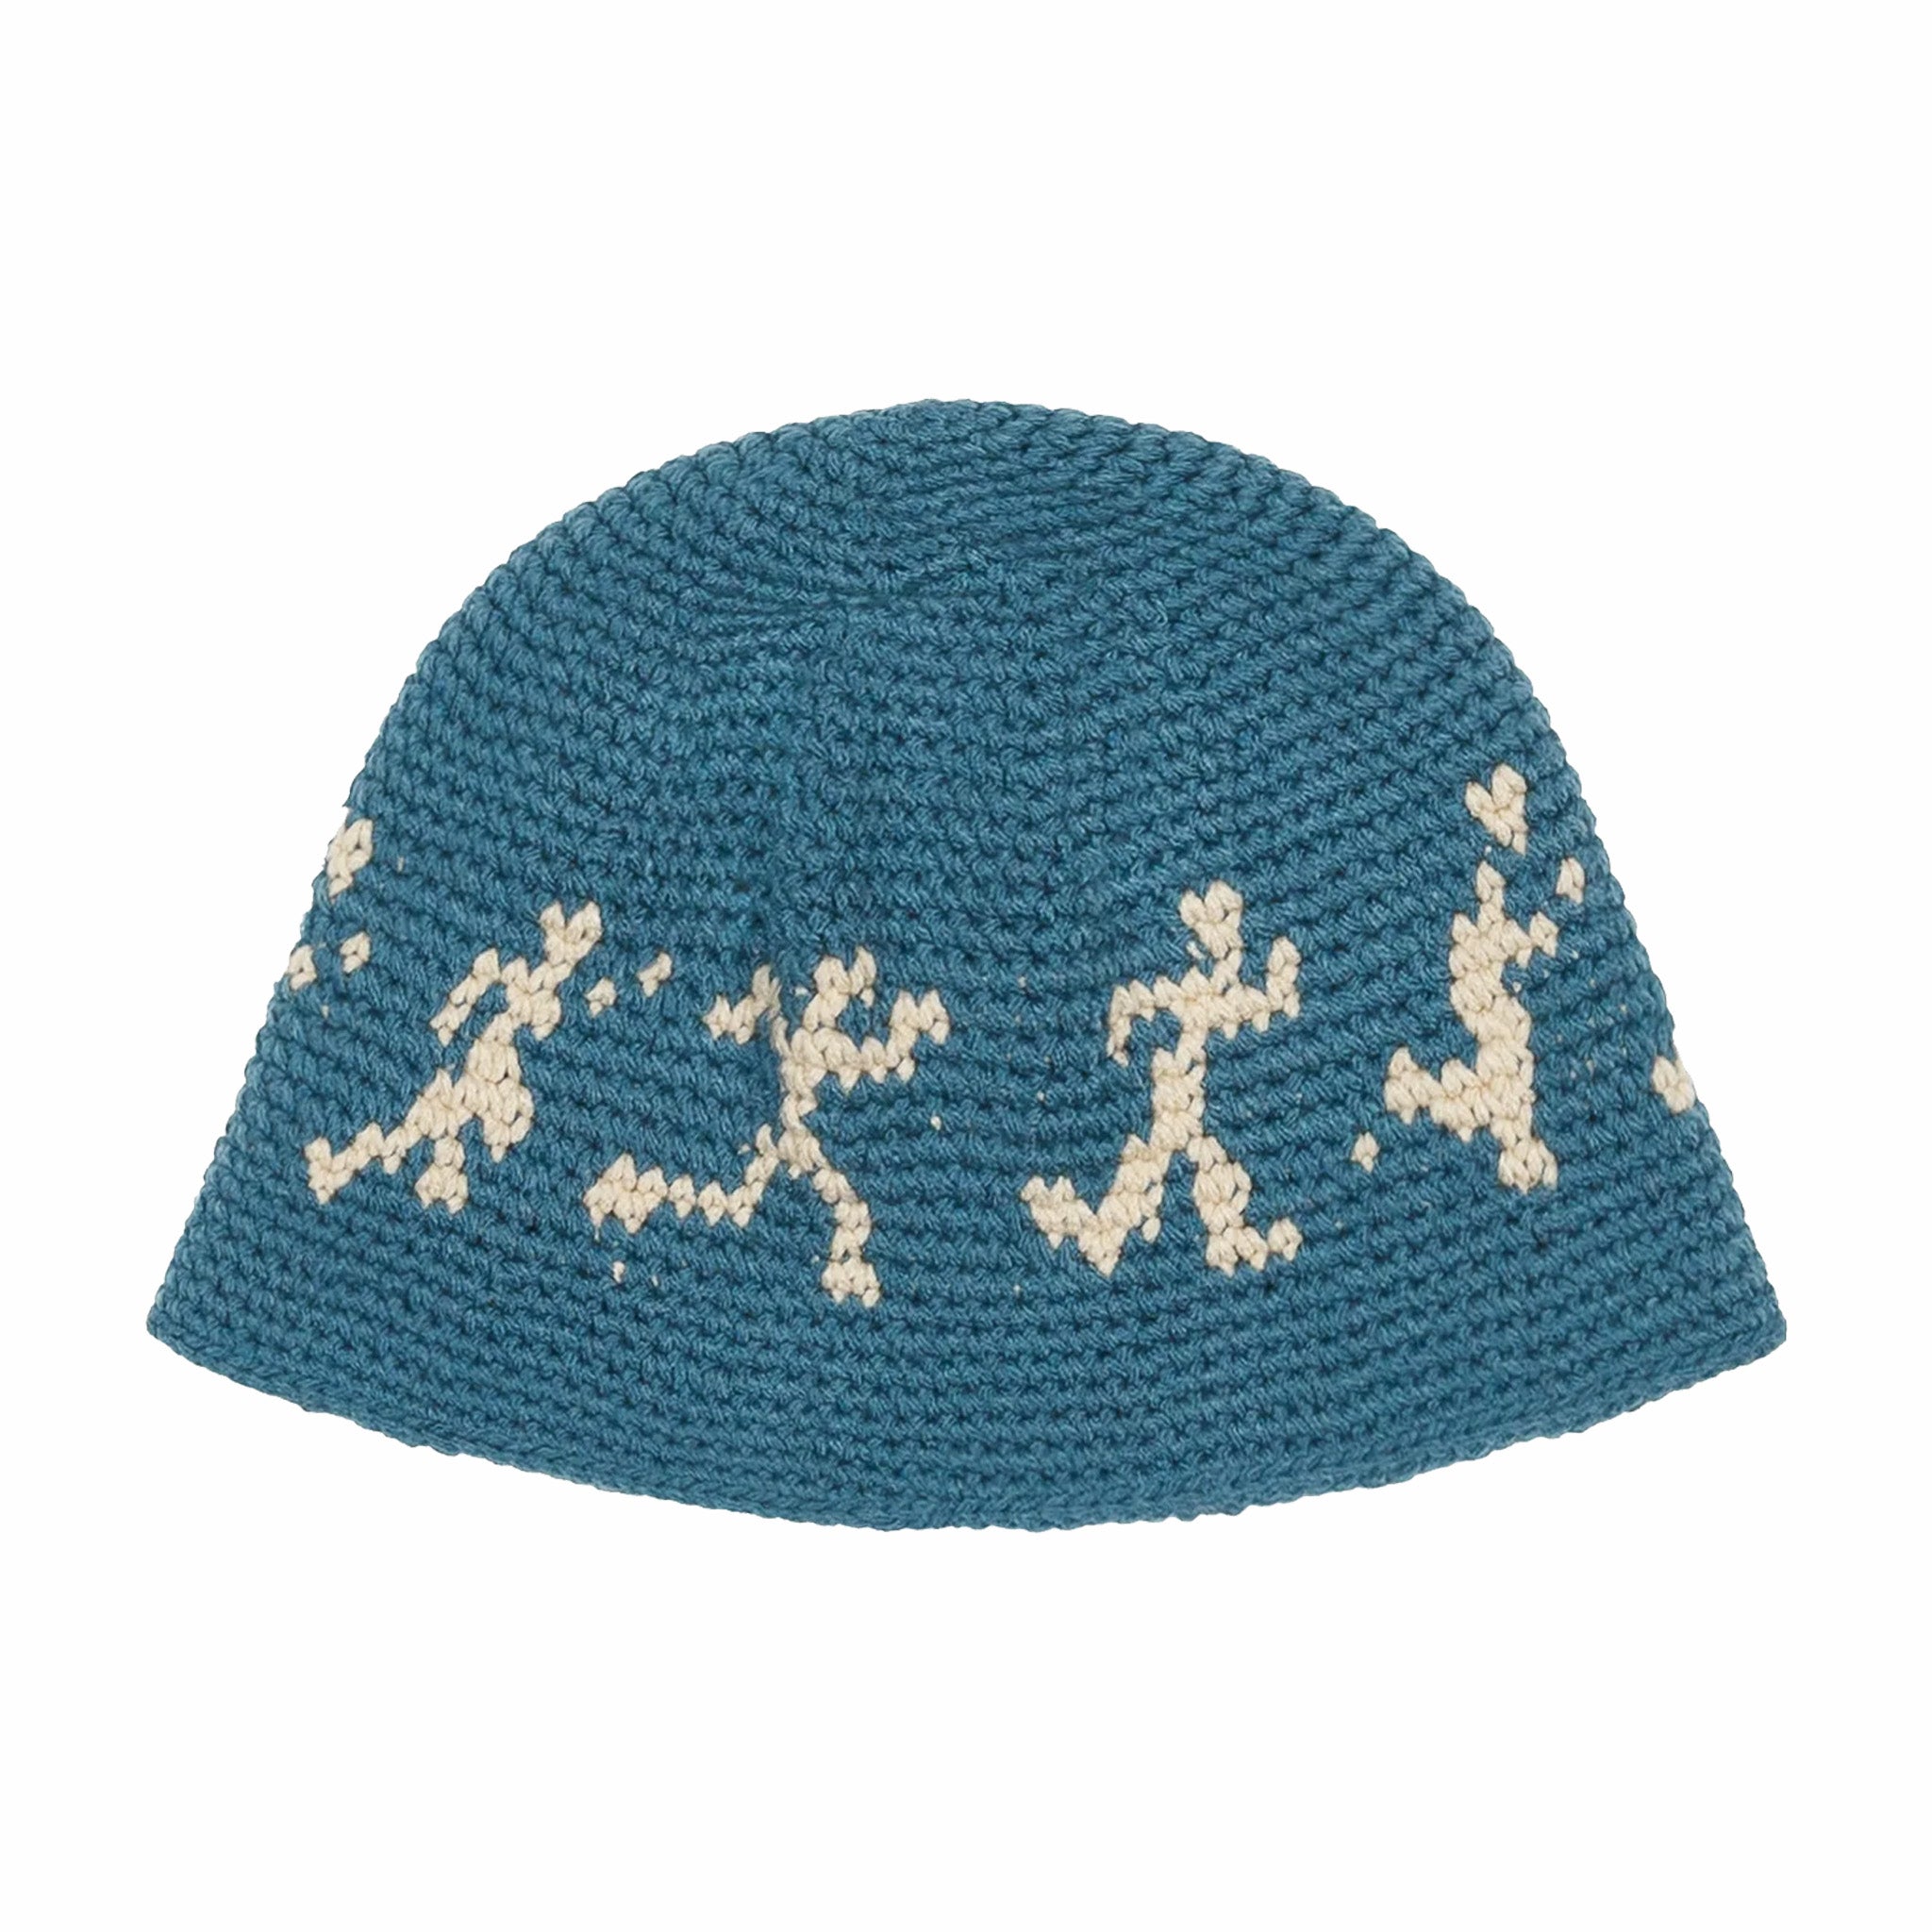 KidSUper Running Guys Crochet Hat (Blue) - August Shop